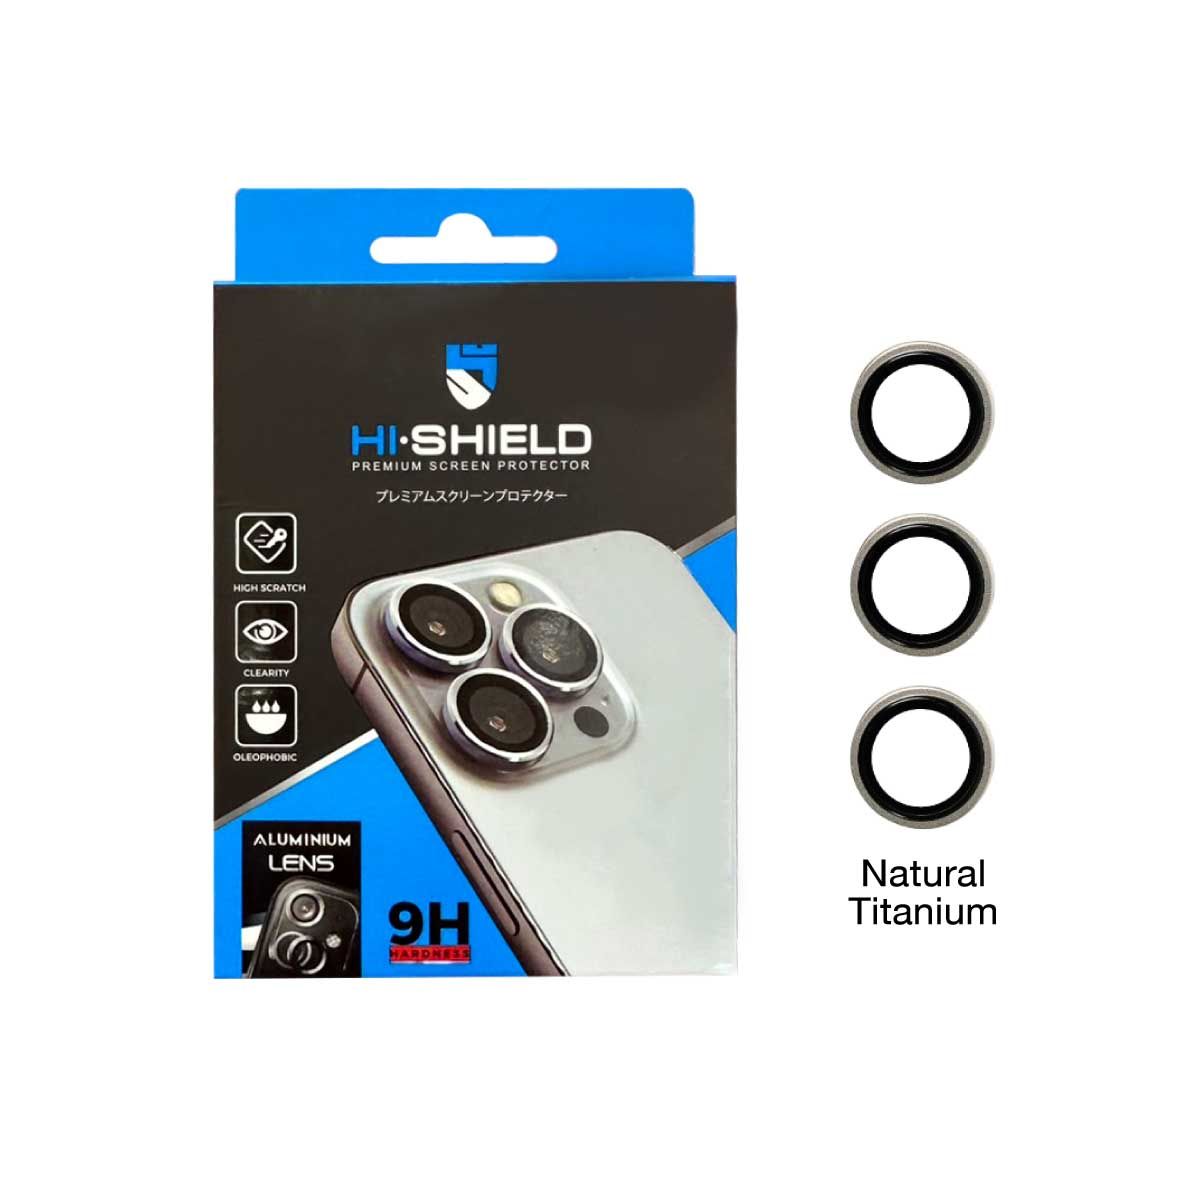 HISHIELD Aluminium Lens Natural Titanium iPhone 15 Pro/ProMax